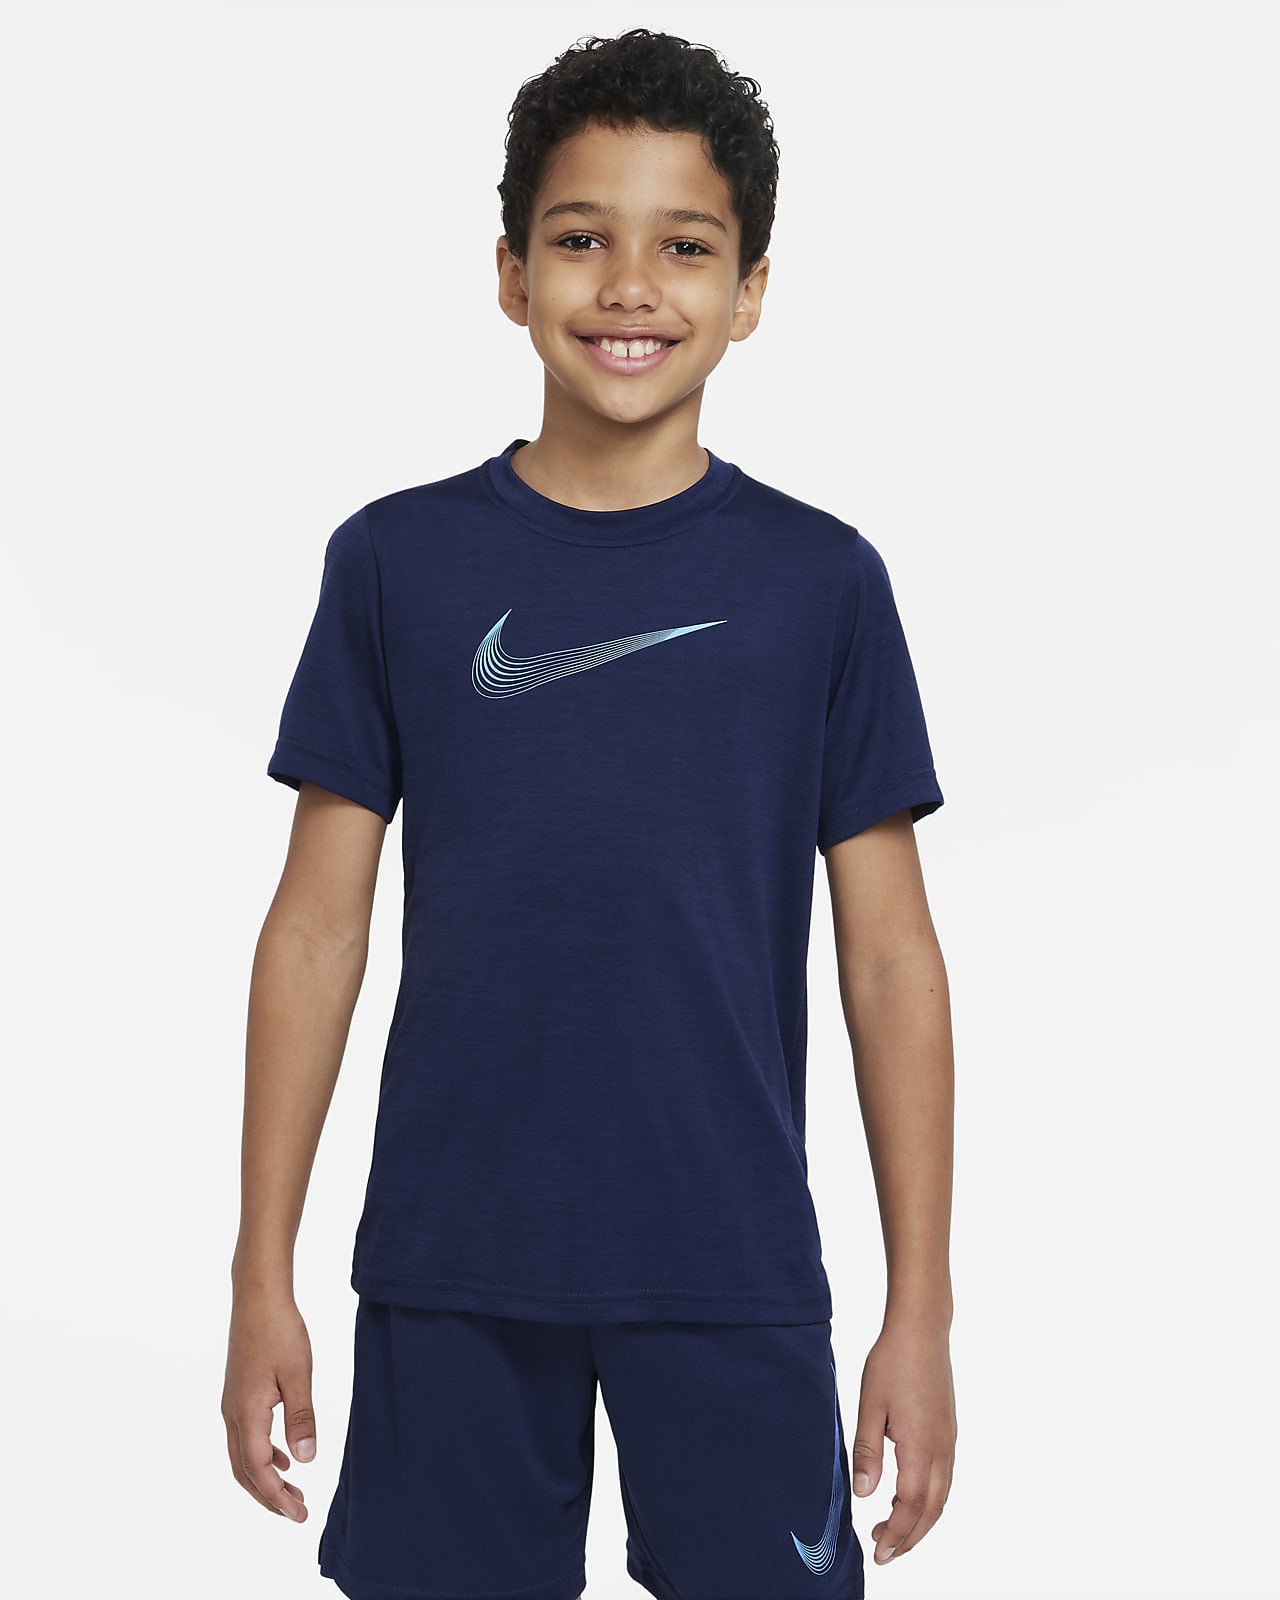 Tréninkové tričko s krátkým rukávem Nike Dri-FIT pro větší děti (chlapce)